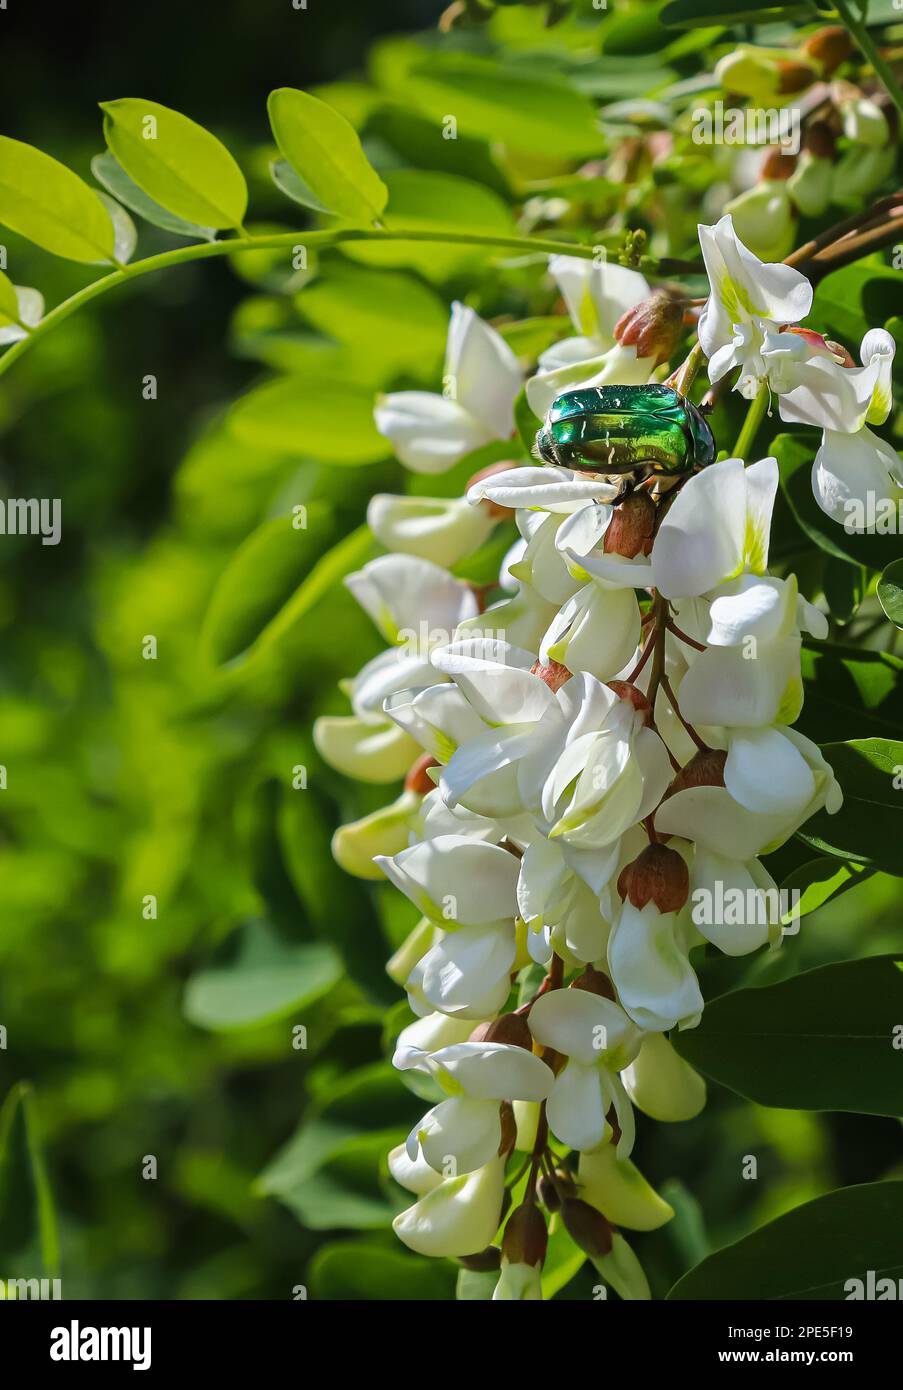 le coléoptère sur les fleurs d'acacia blanc se ferme sur un fond vert Banque D'Images